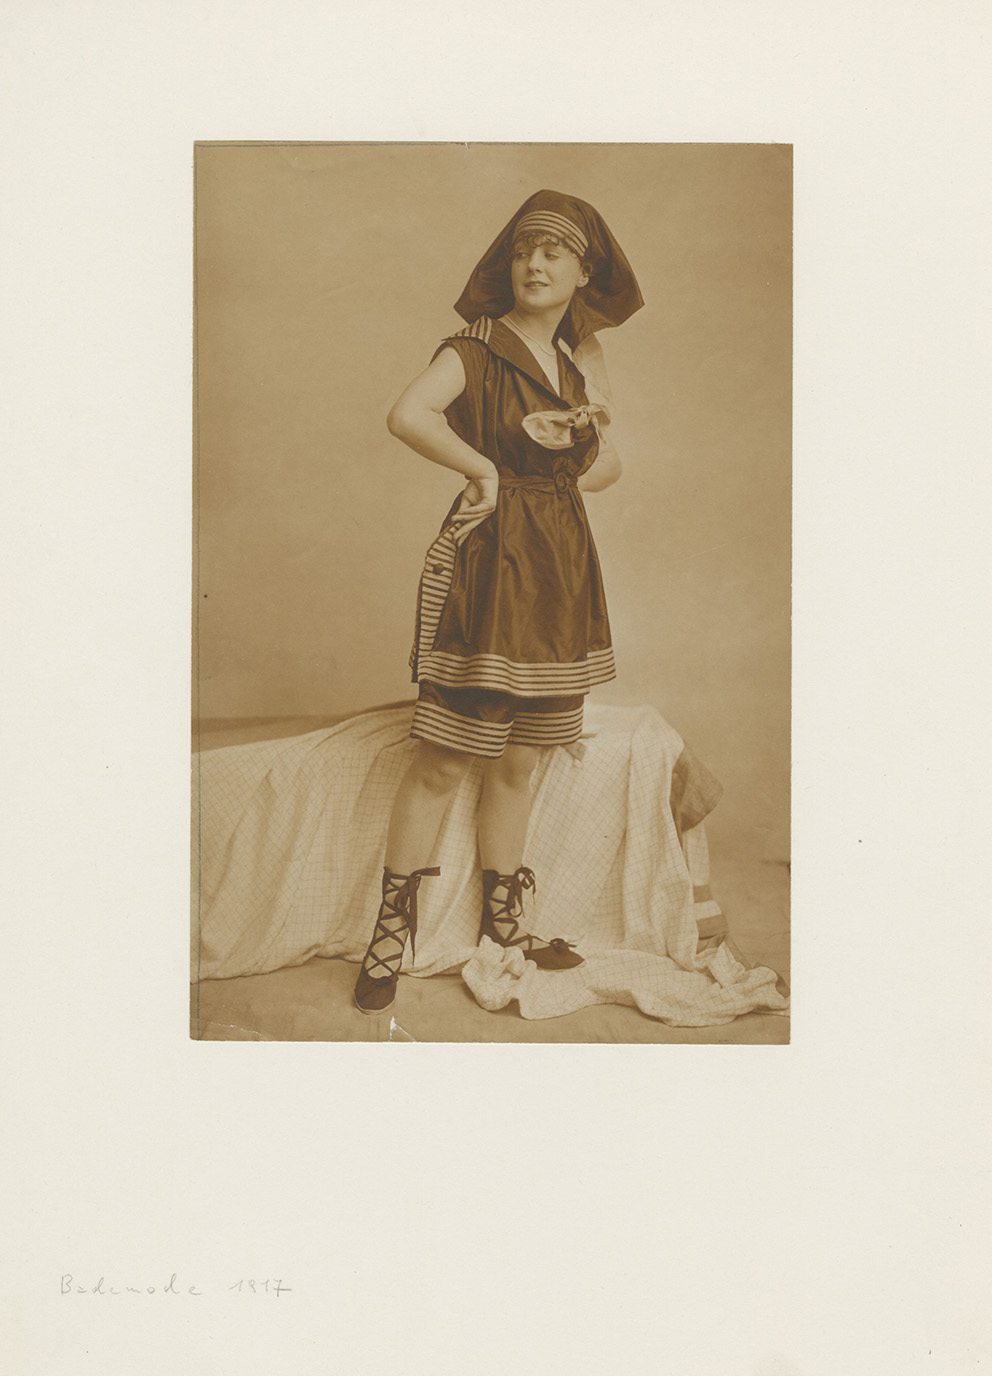 Atelier d’Ora: Modeaufnahme Badeanzug (Frl. Schreiber) für „Die Damenwelt“, 1917, Mattalbumin, 21 x 14,3 cm, Sammlung Frank, Landesgalerie Linz.